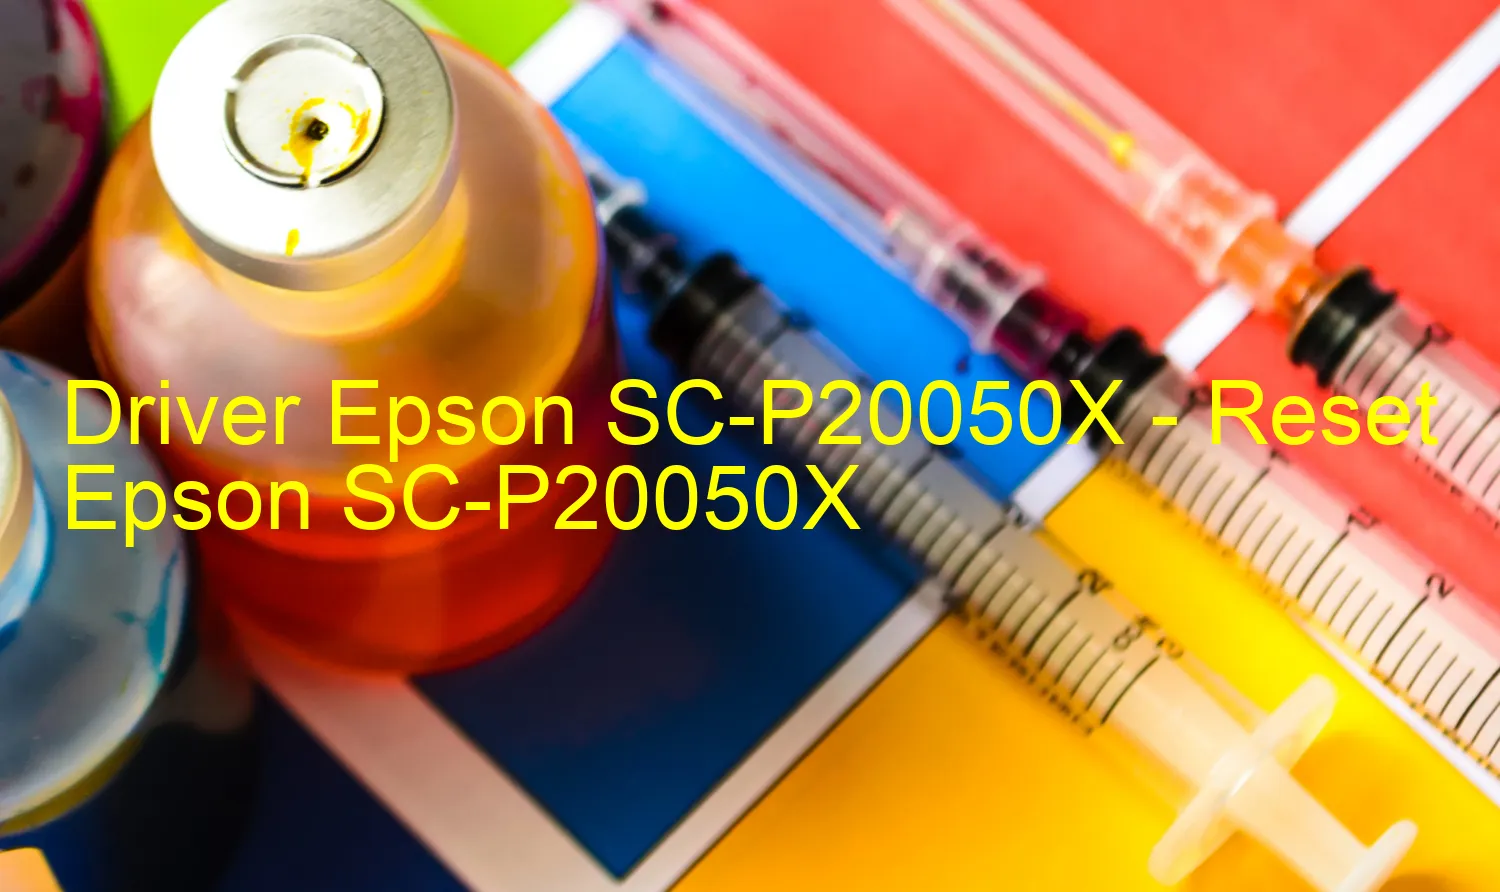 Epson SC-P20050Xのドライバー、Epson SC-P20050Xのリセットソフトウェア